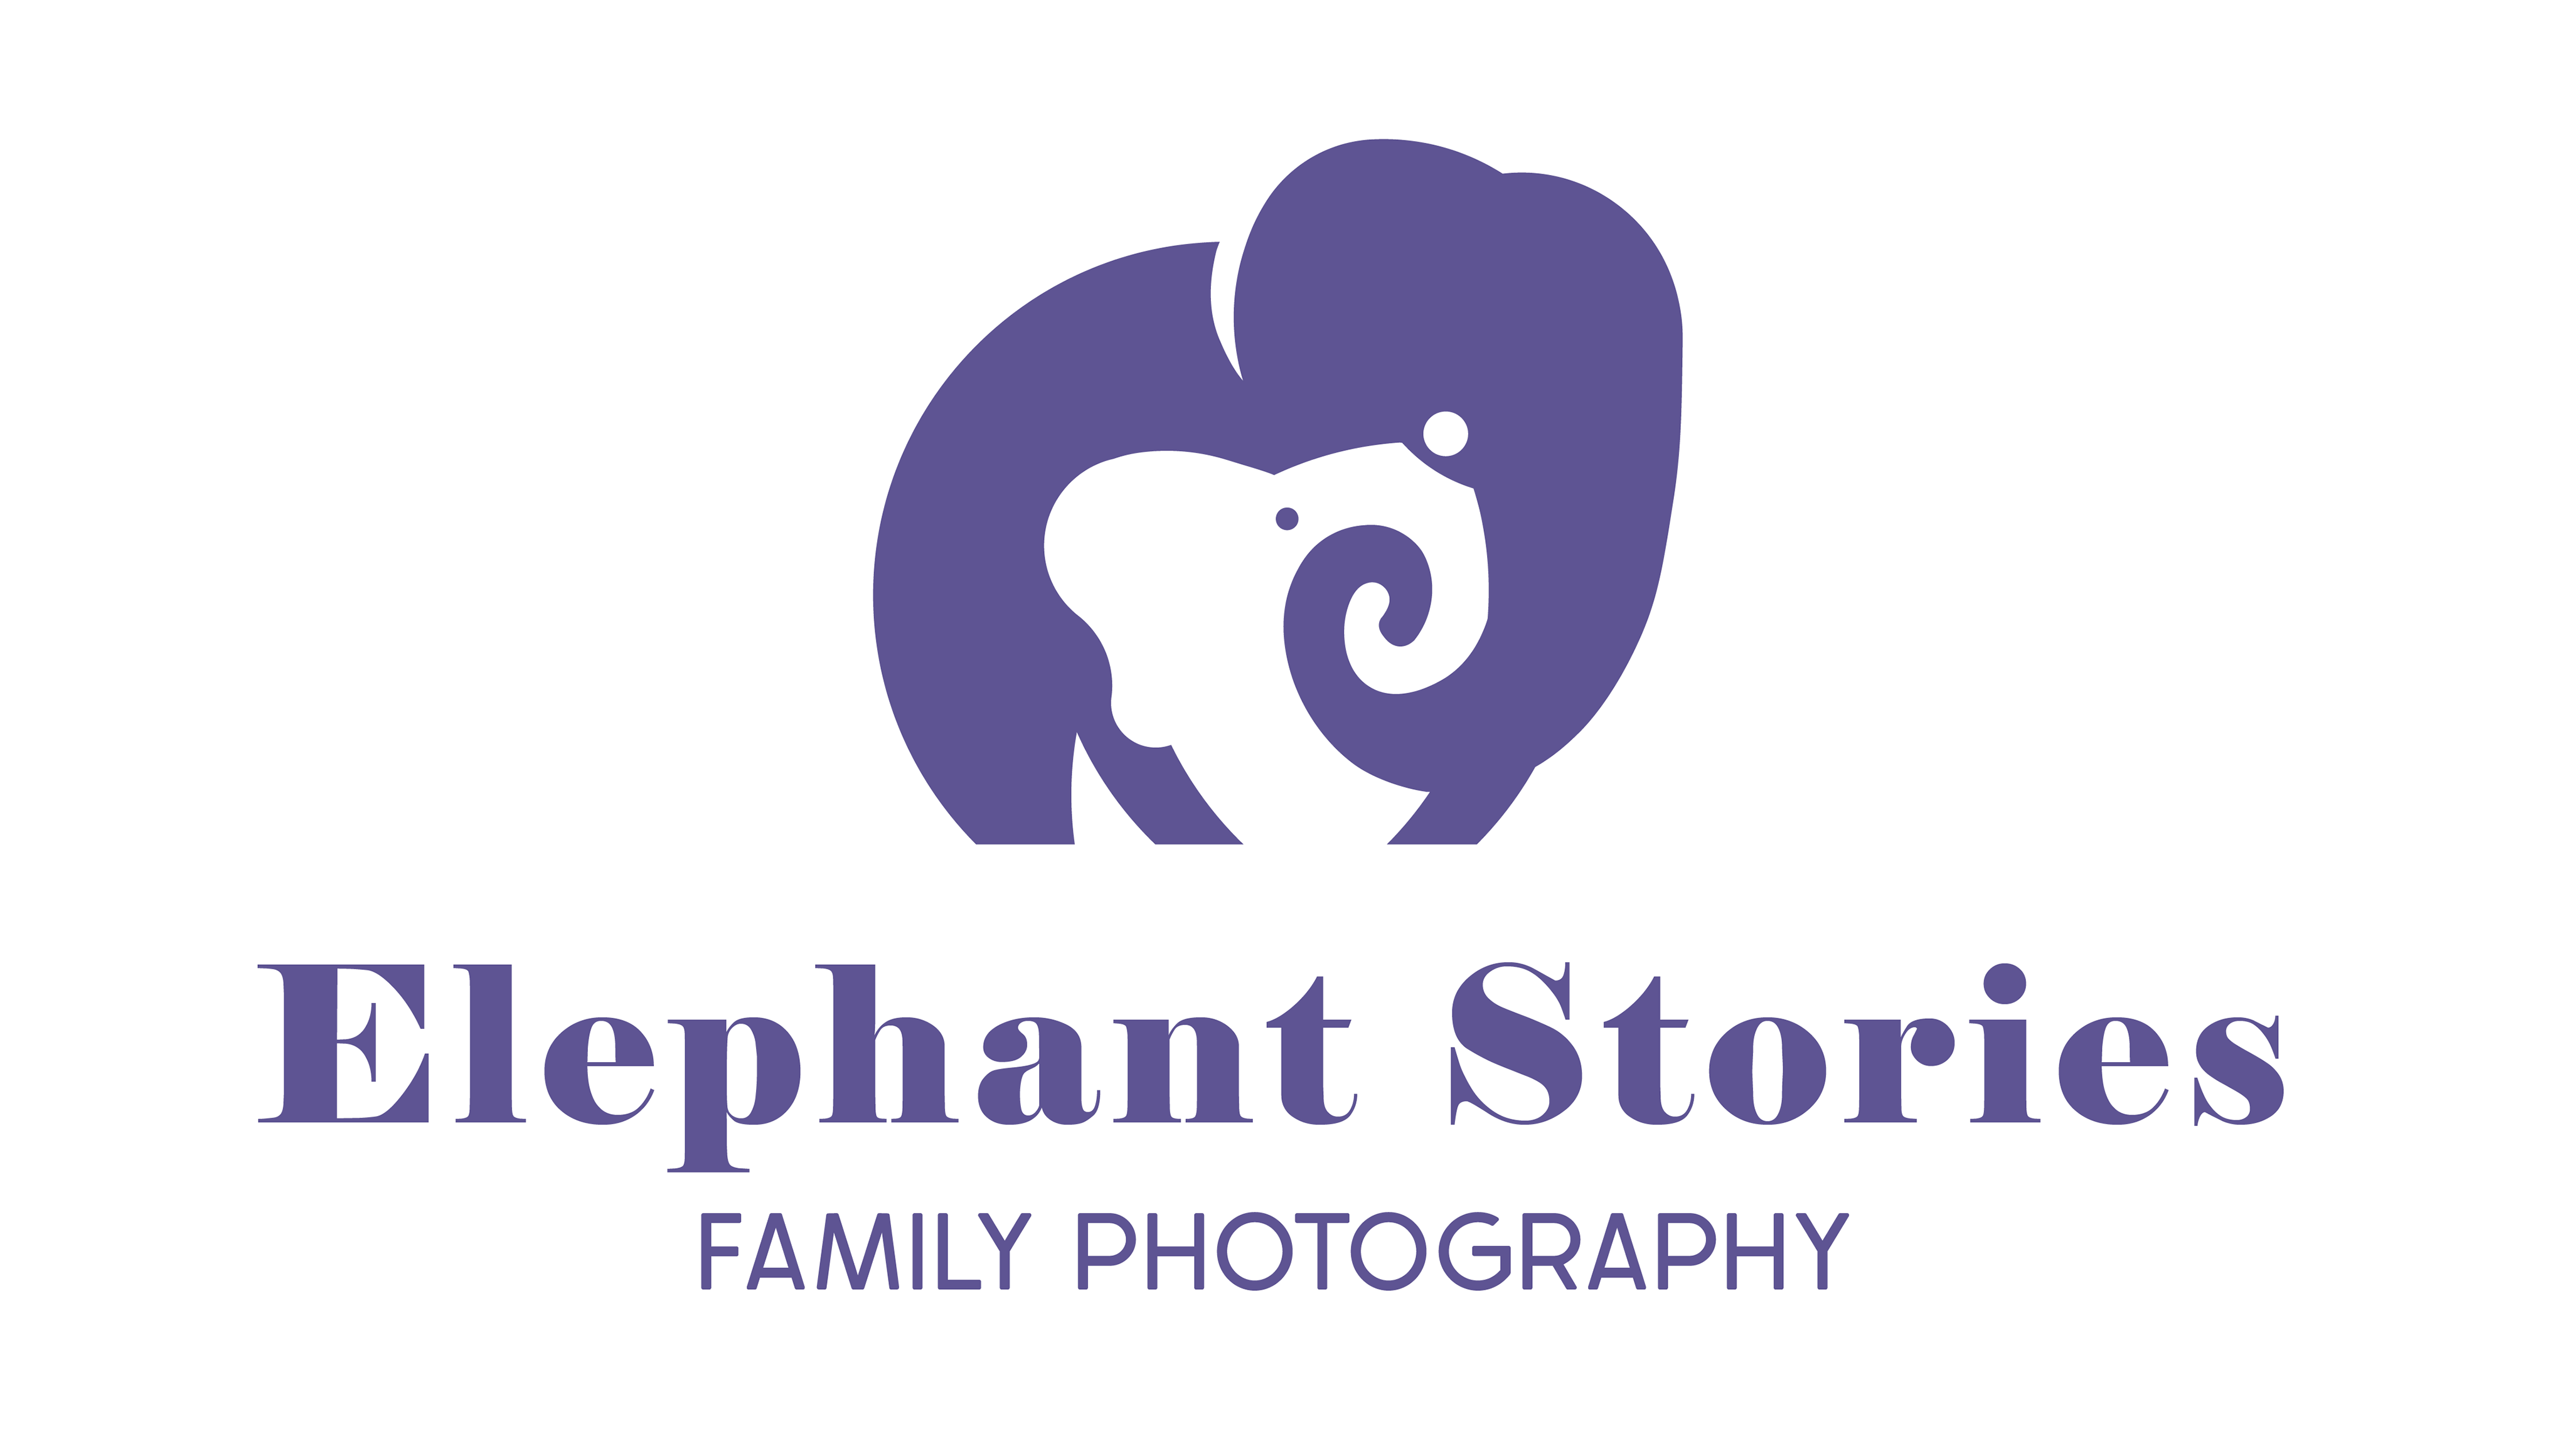 ELEPHANT STORIES